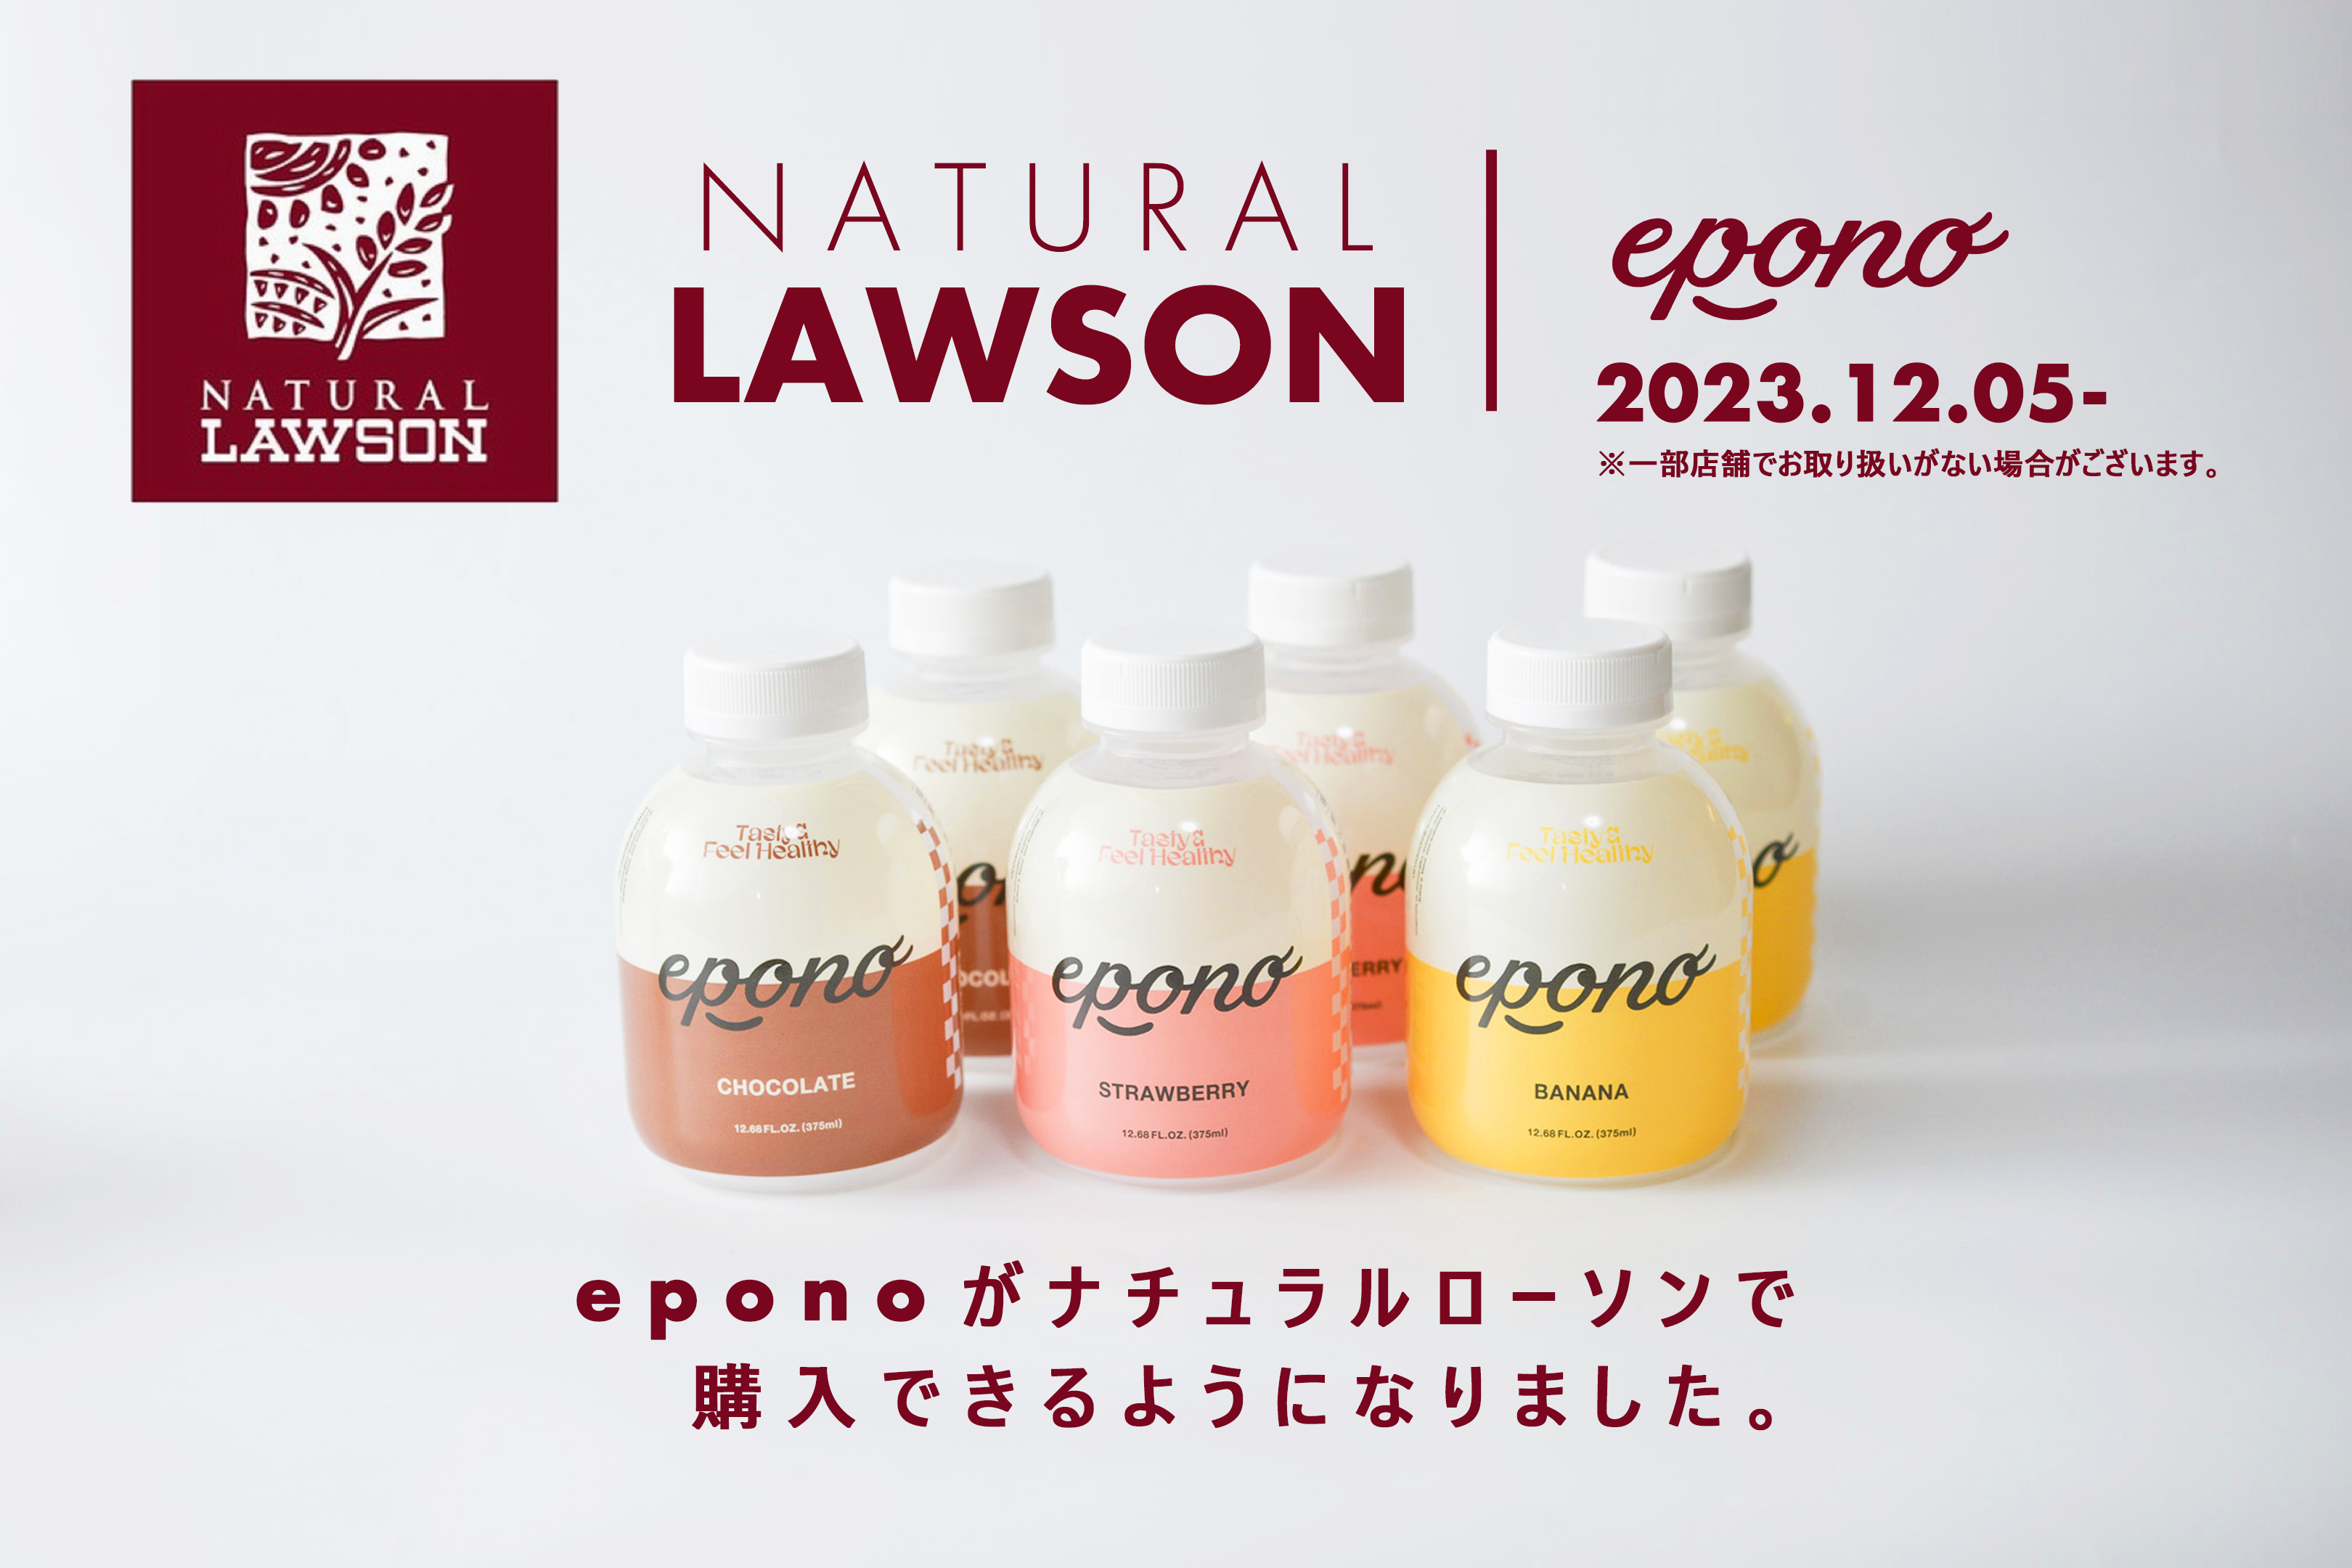 “ナチュラルローソンに新登場” SNSやオンラインストアで大人気の
日本初(*)の完全栄養食シェイク『epono』が12月5日発売！